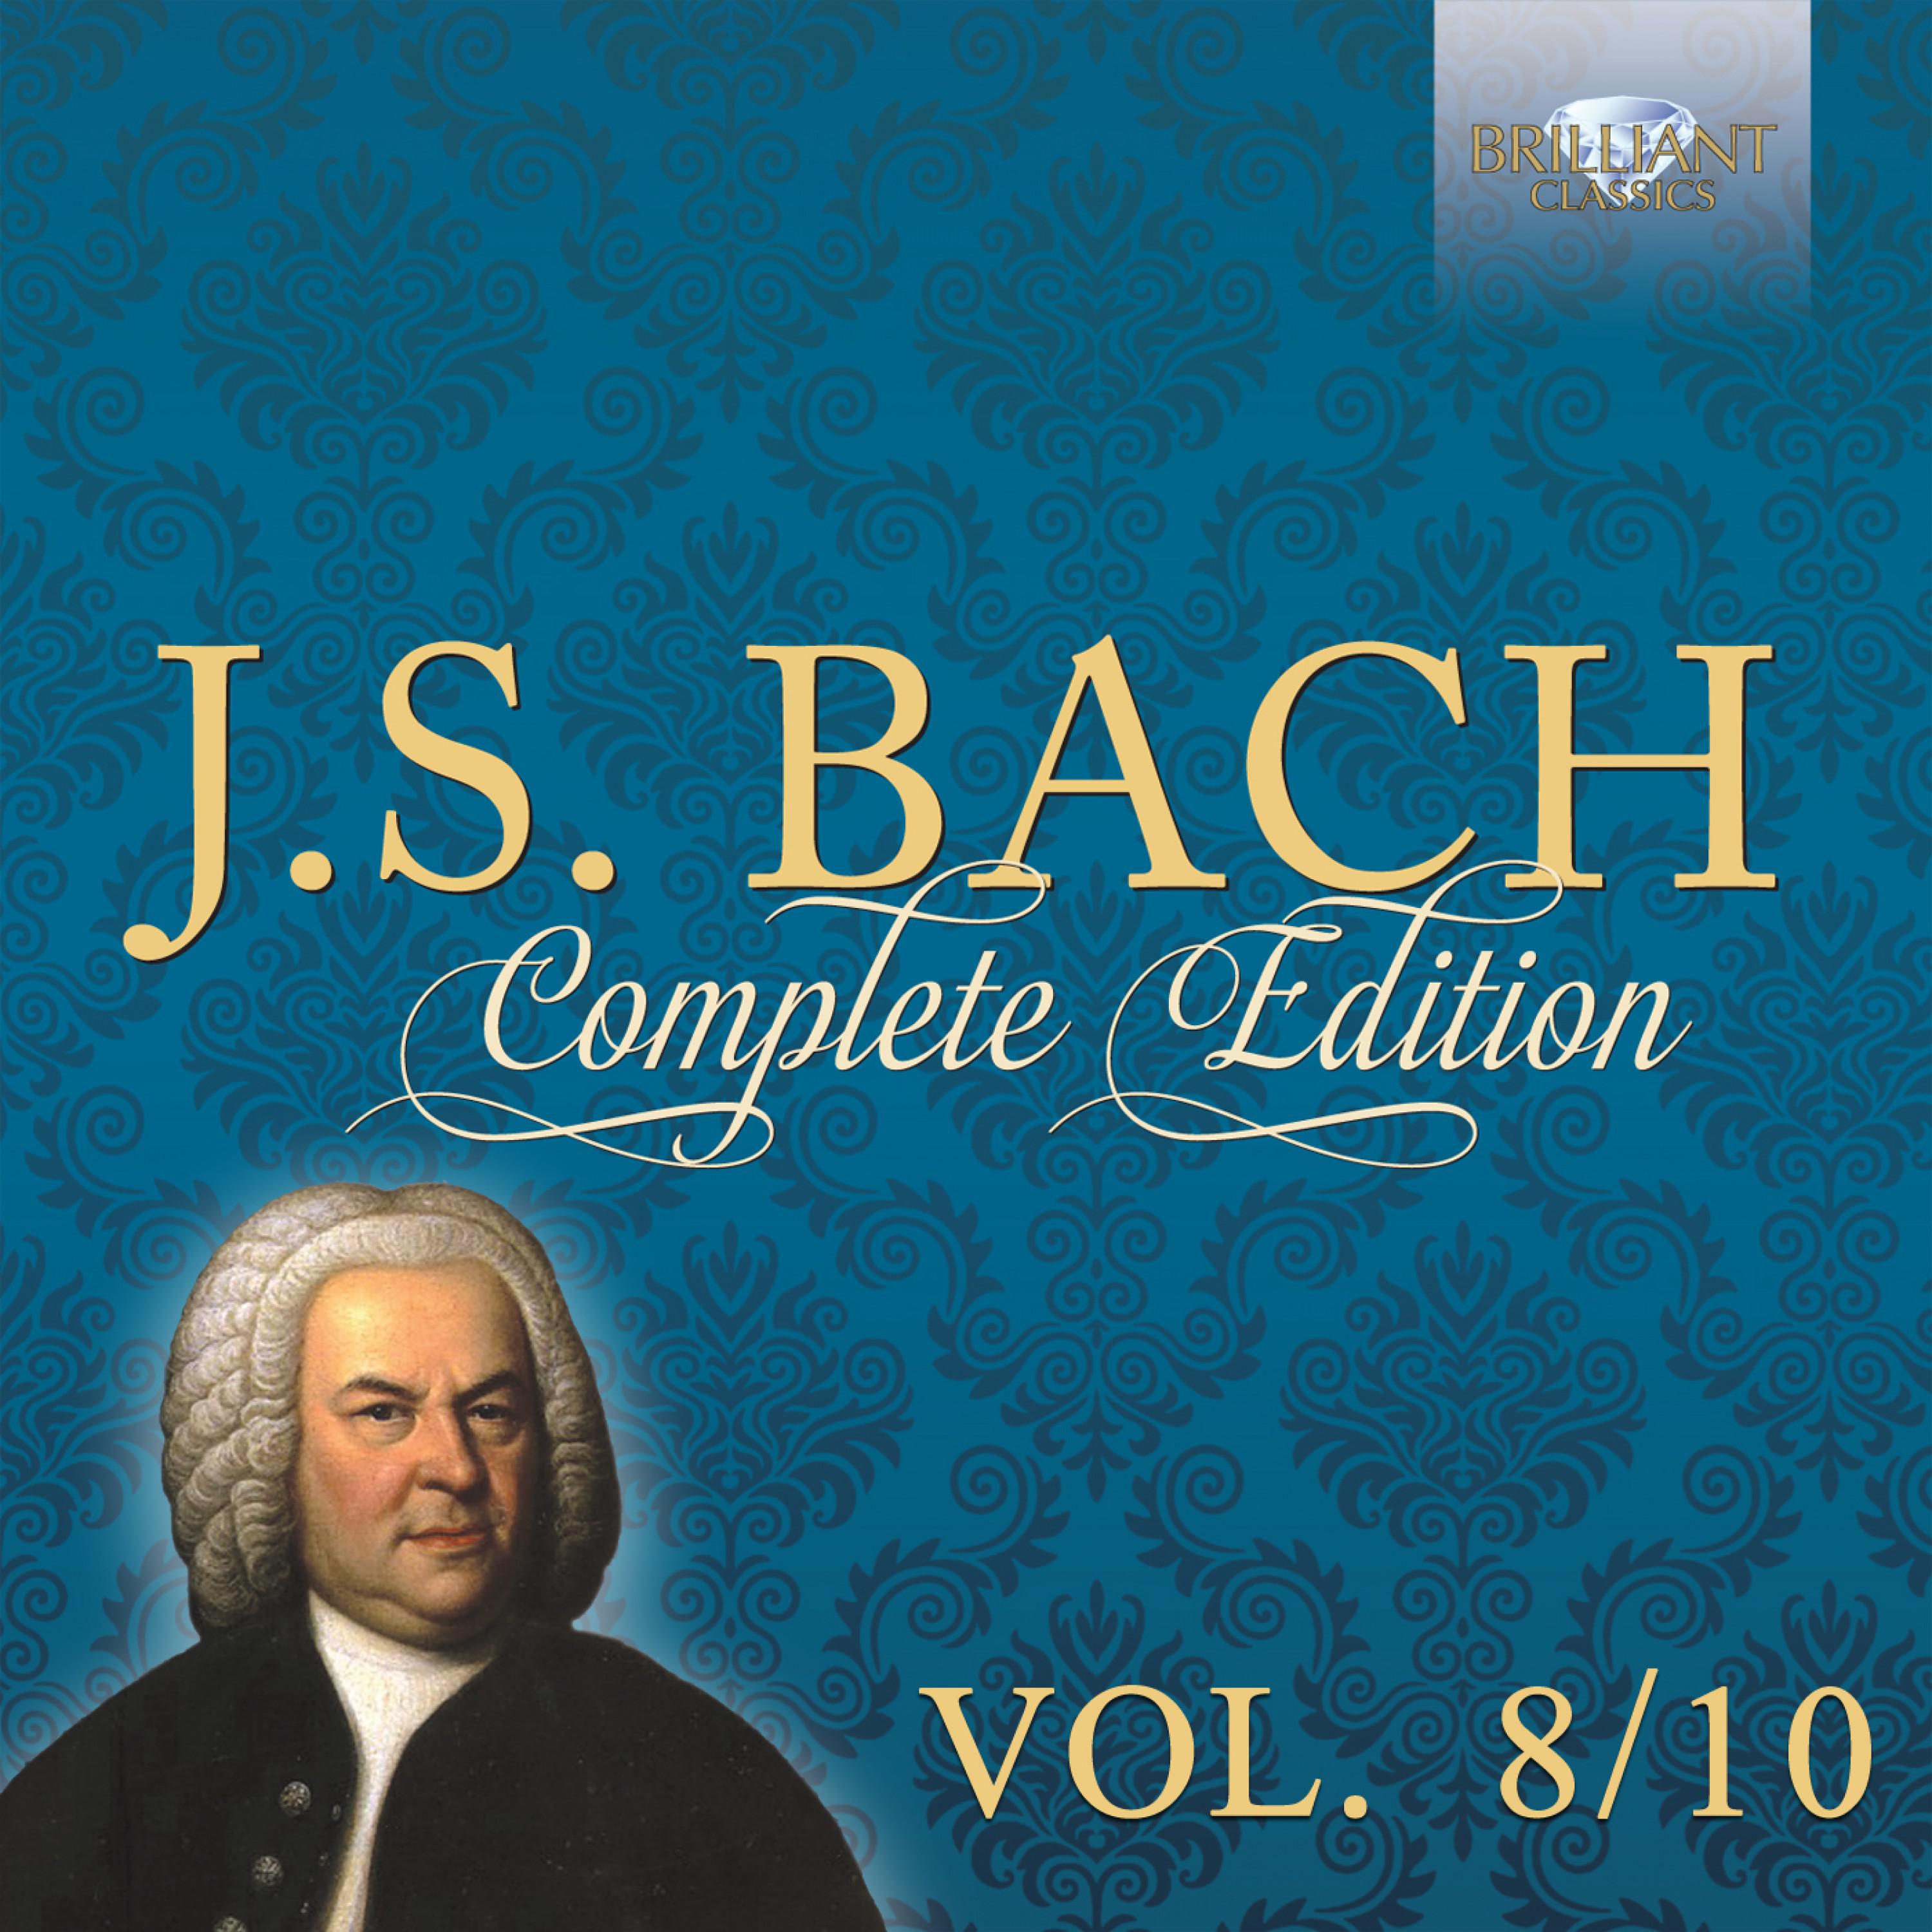 Preise dein Glü ck, gesegnetes Sachsen, BWV 215: IX. Chorus. Stifter der Reiche, Beherrscher der Kronen